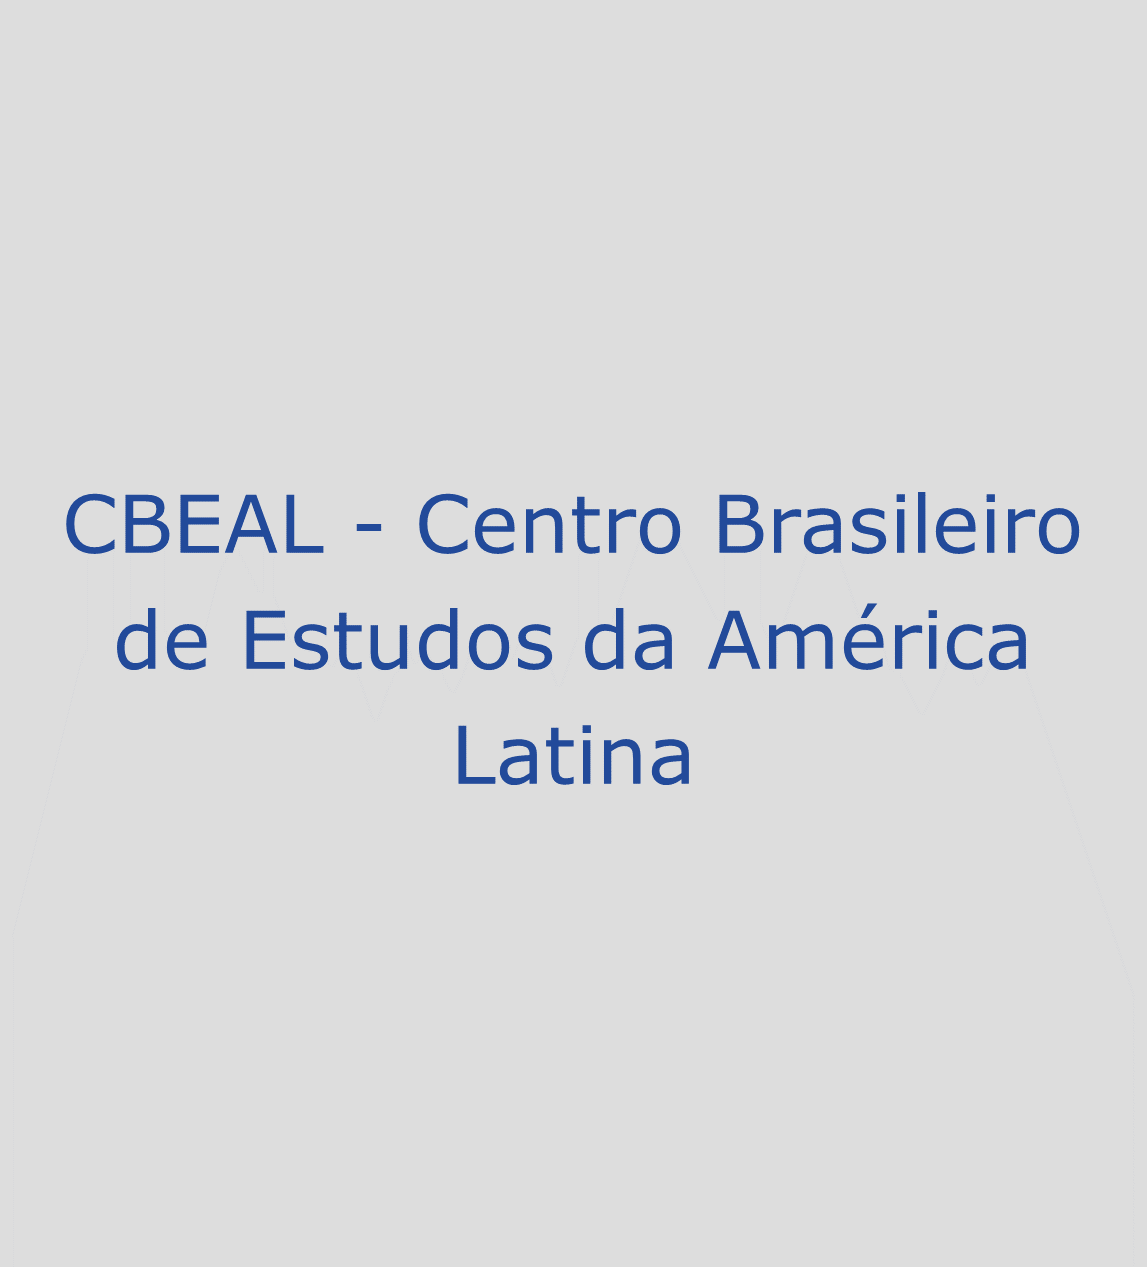 CBEAL – Centro Brasileiro de Estudos da América Latina